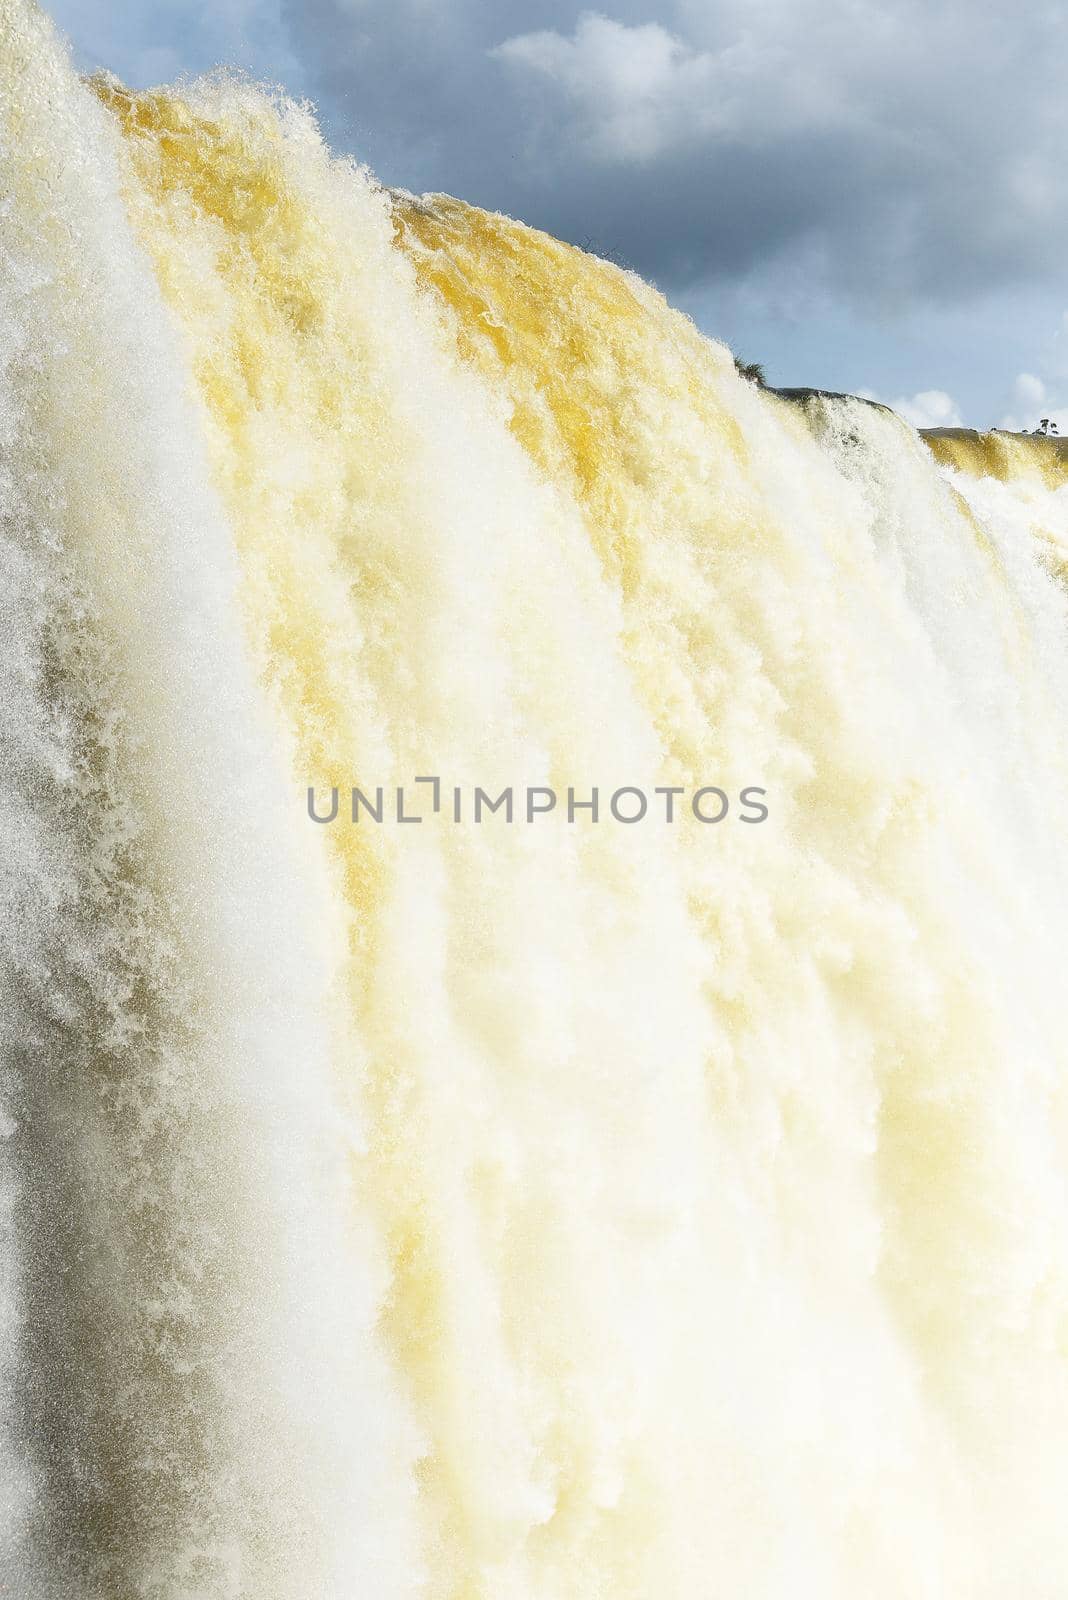 Iguazu water flow by porbital